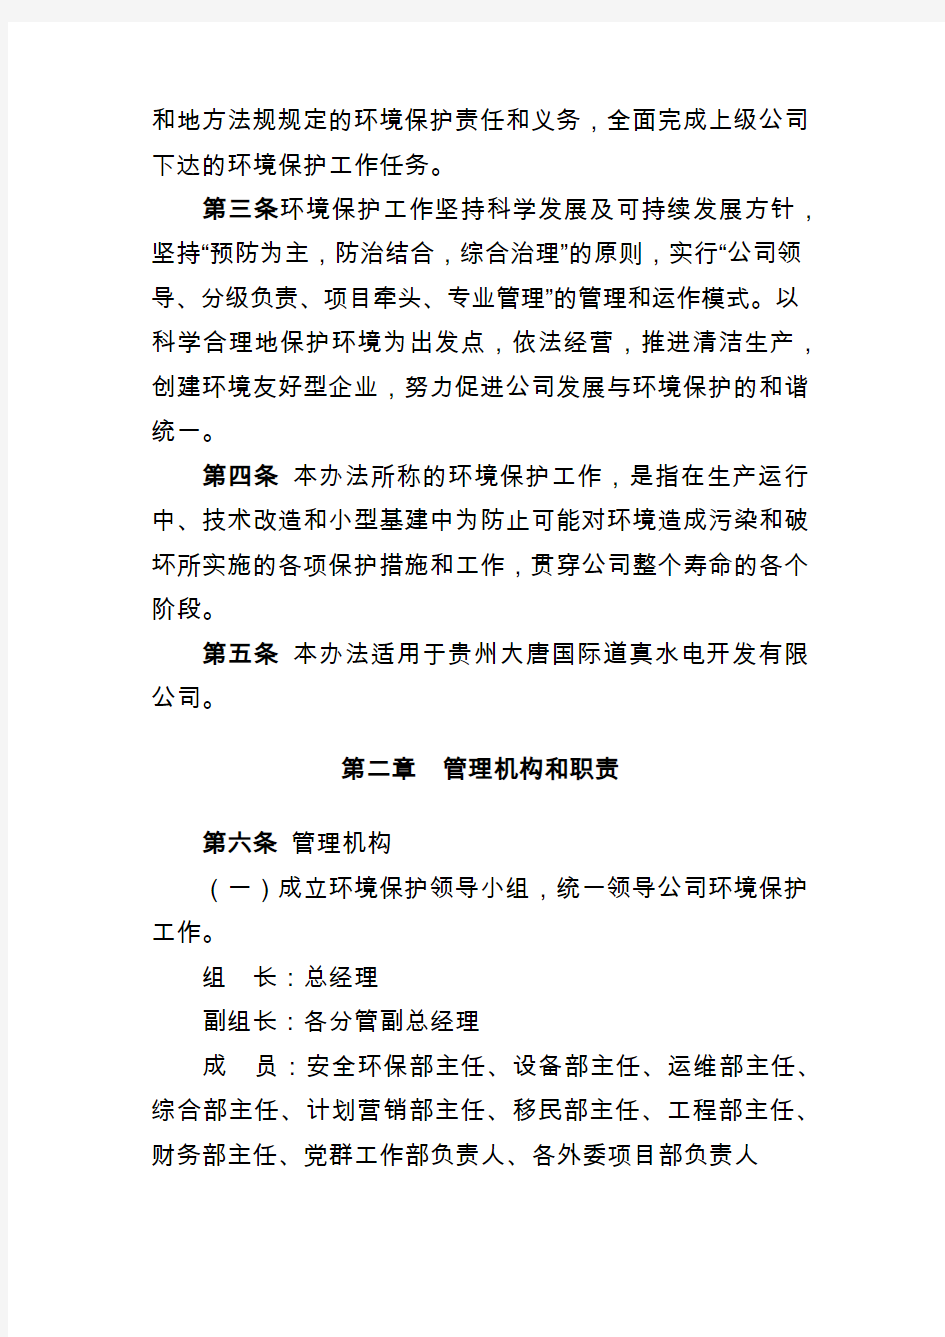 贵州大唐国际道真水电开发有限公司环境保护管理办法(2019年版)